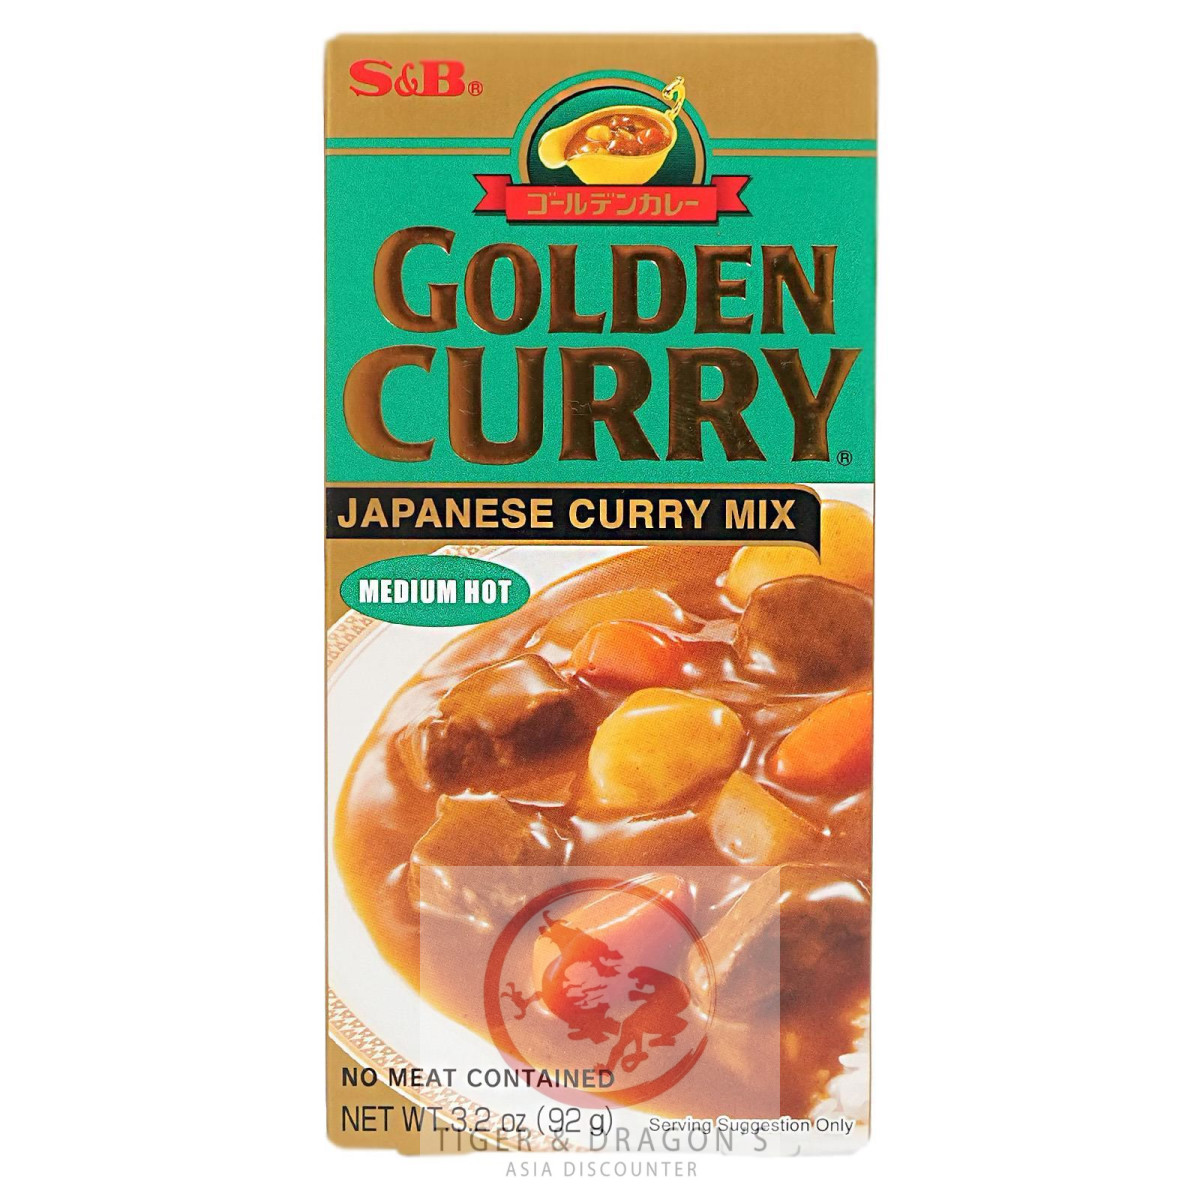 S&B Golden Curry Japanisches Curry Mix Medium Hot 92g